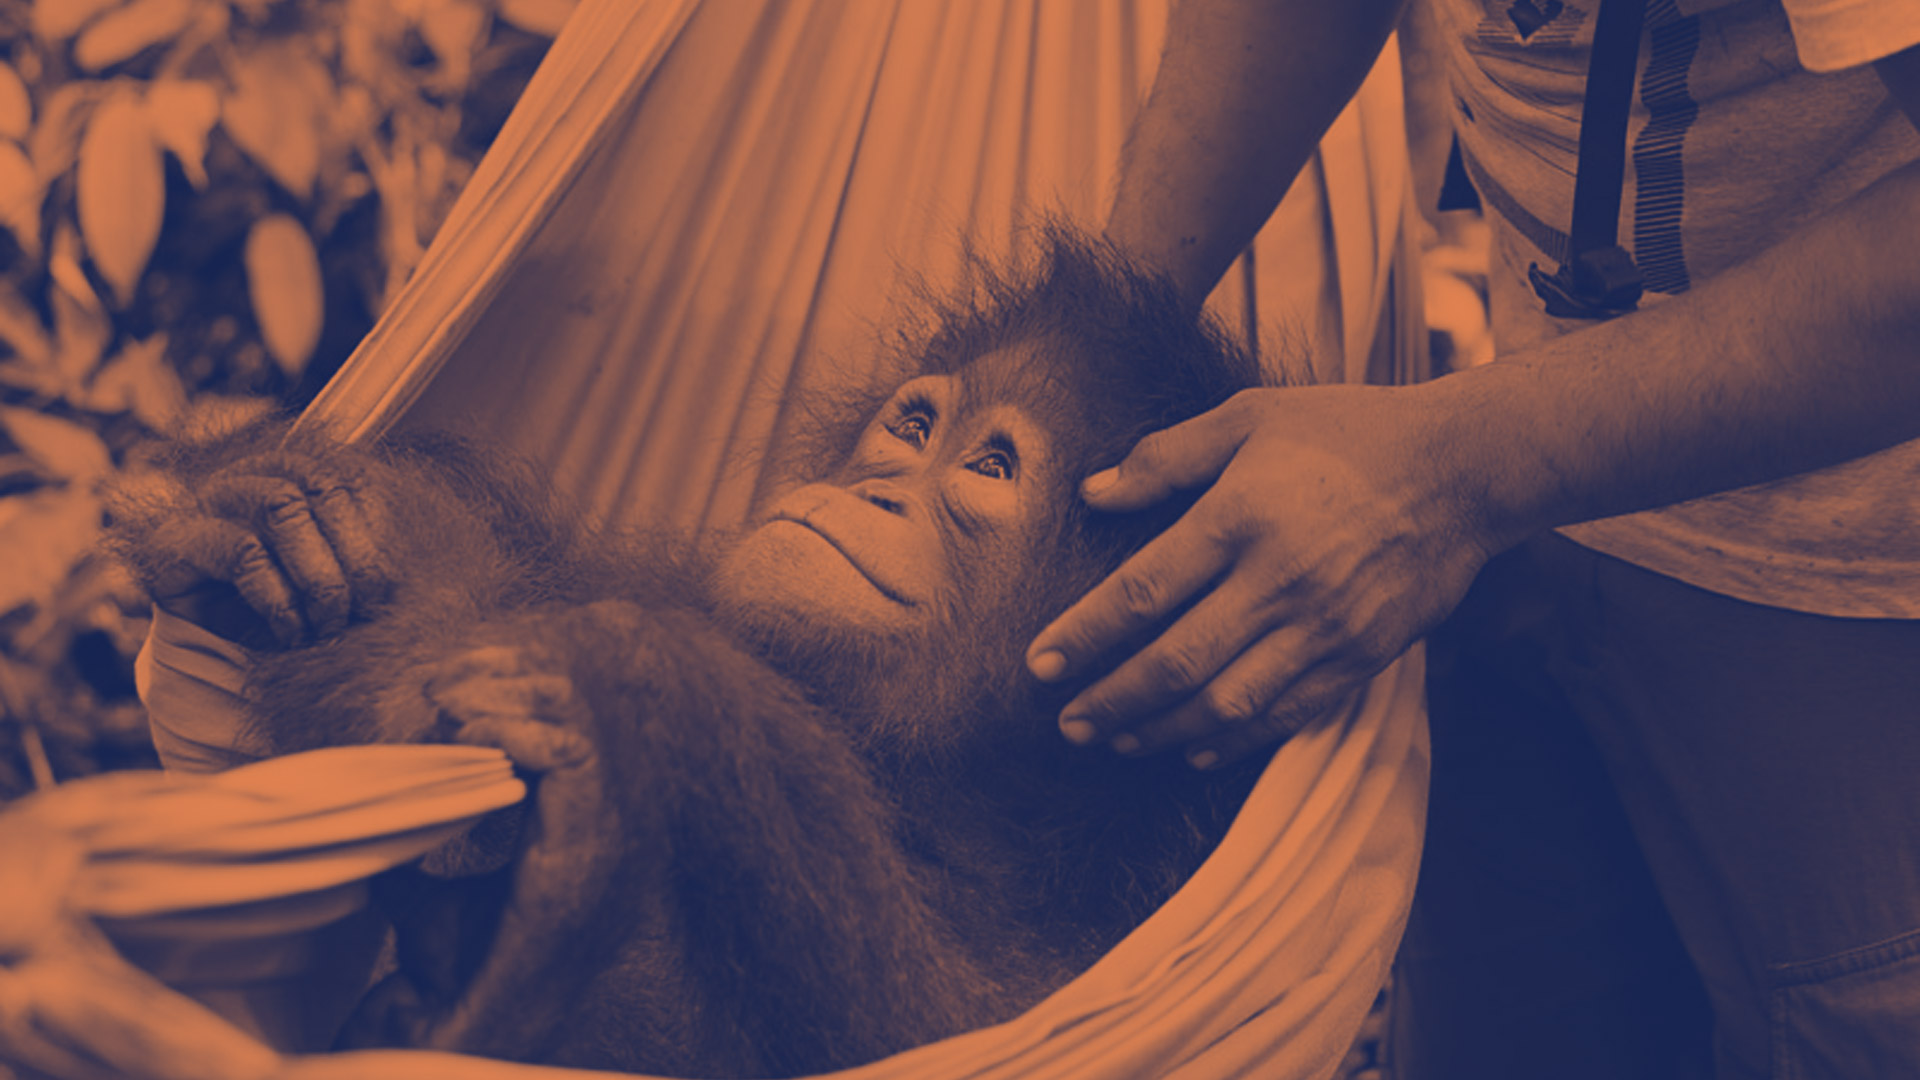 Día Internacional de los Animales: cercanos y en peligro, conoce a los orangutanes